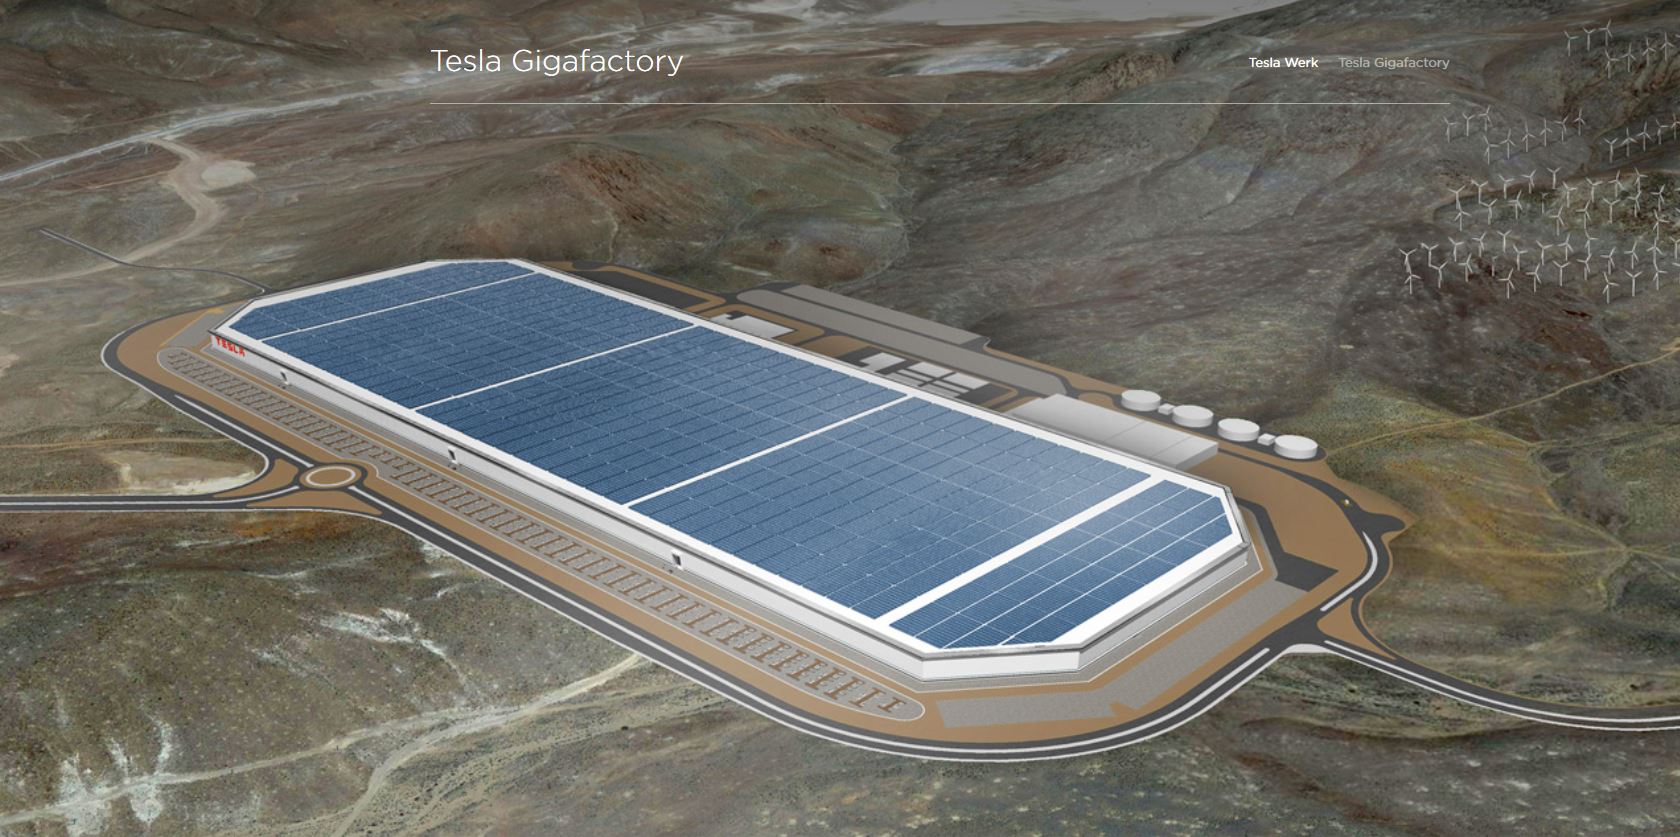 Tesla, Gigafactory 4 için keseceği ağaçların üç kat fazlasını dikeceğini taahhüt etti